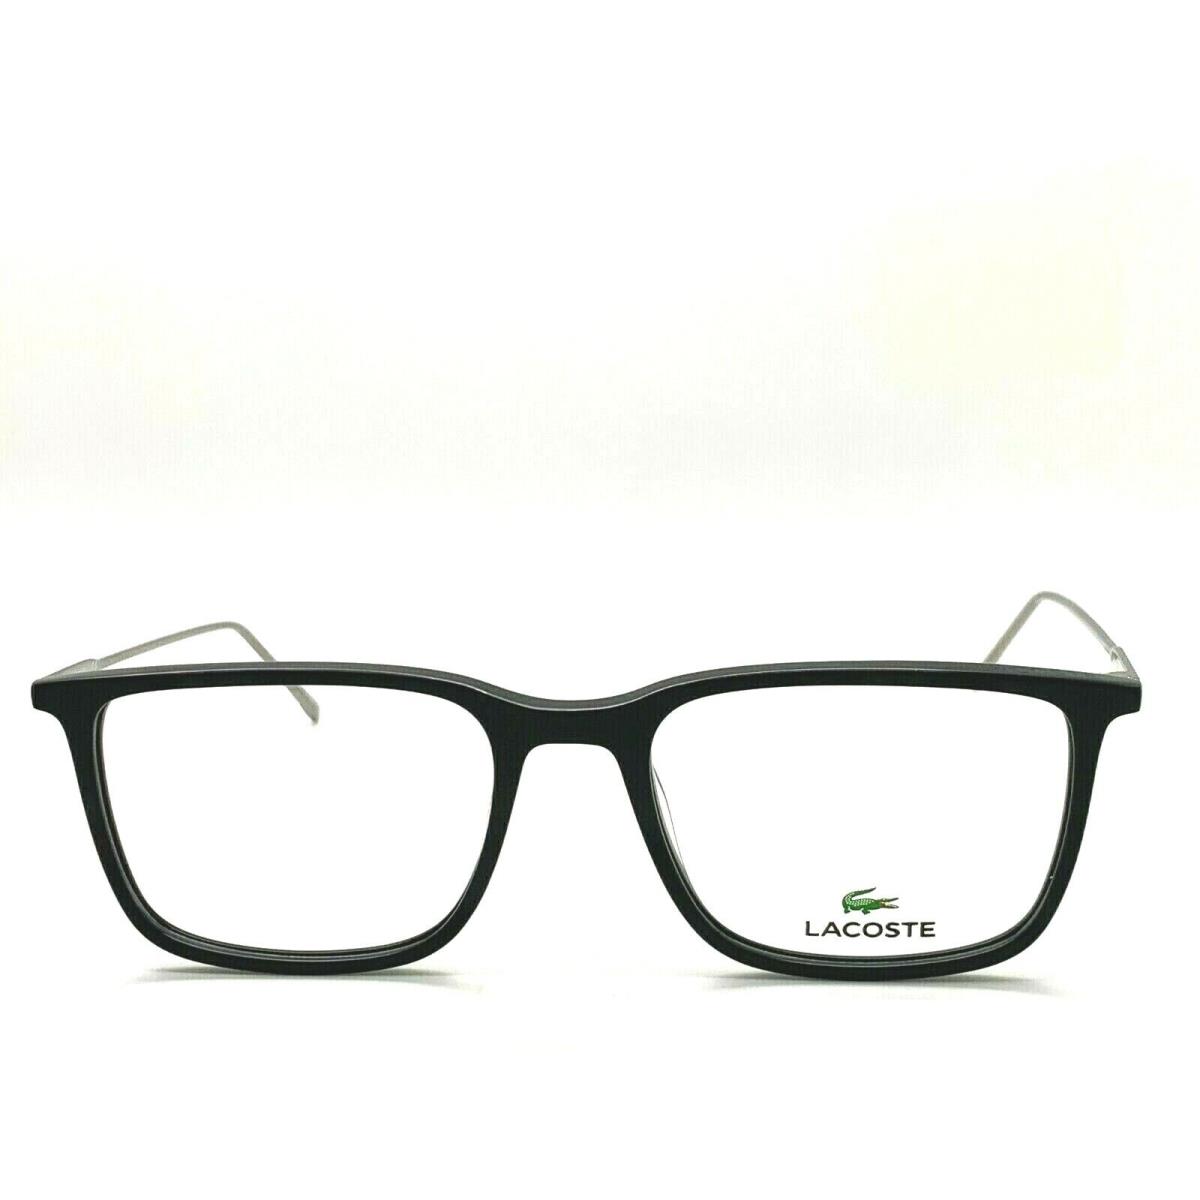 Lacoste eyeglasses  - BLACK /GUNMETAL Frame